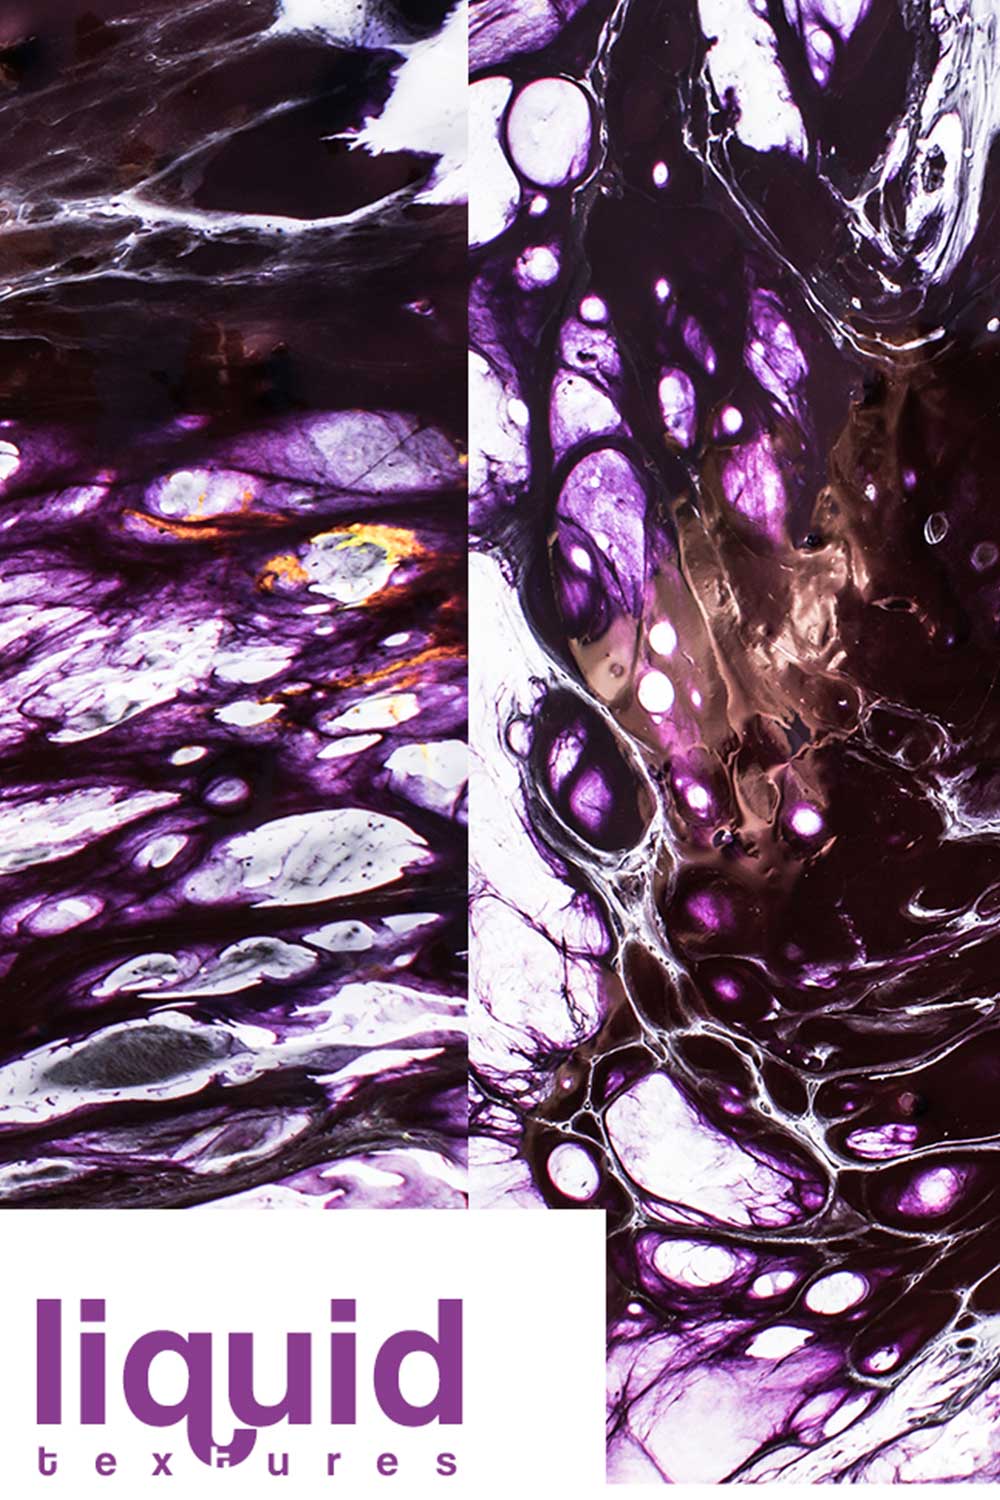 Purple Marble Digital Paper Photoshop Textures Pinterest Image.